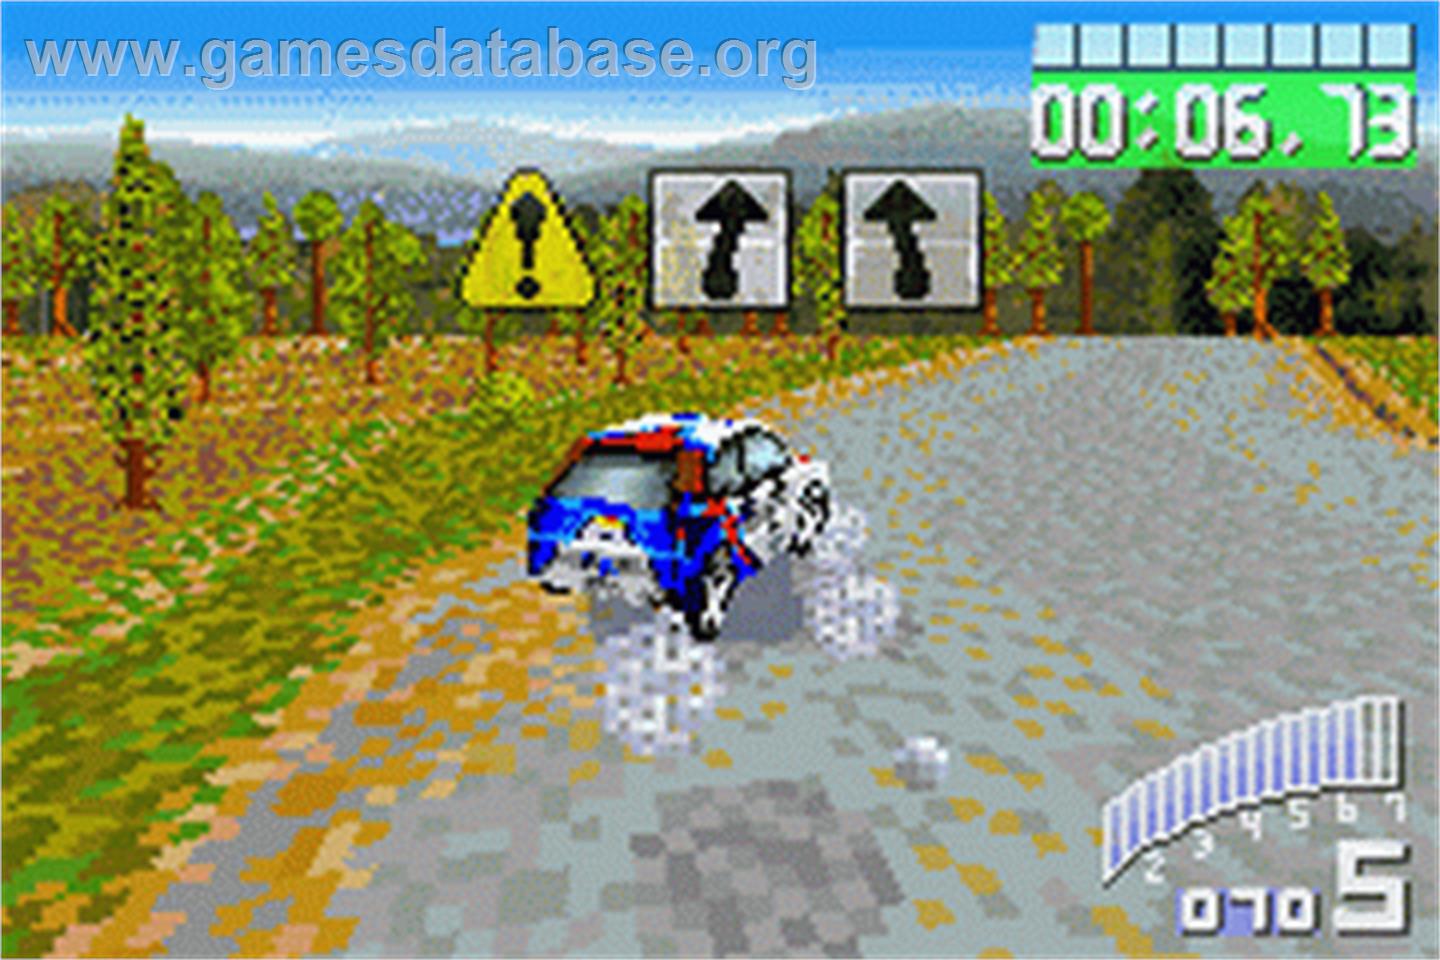 Colin McRae Rally 2.0 - Nintendo Game Boy Advance - Artwork - In Game